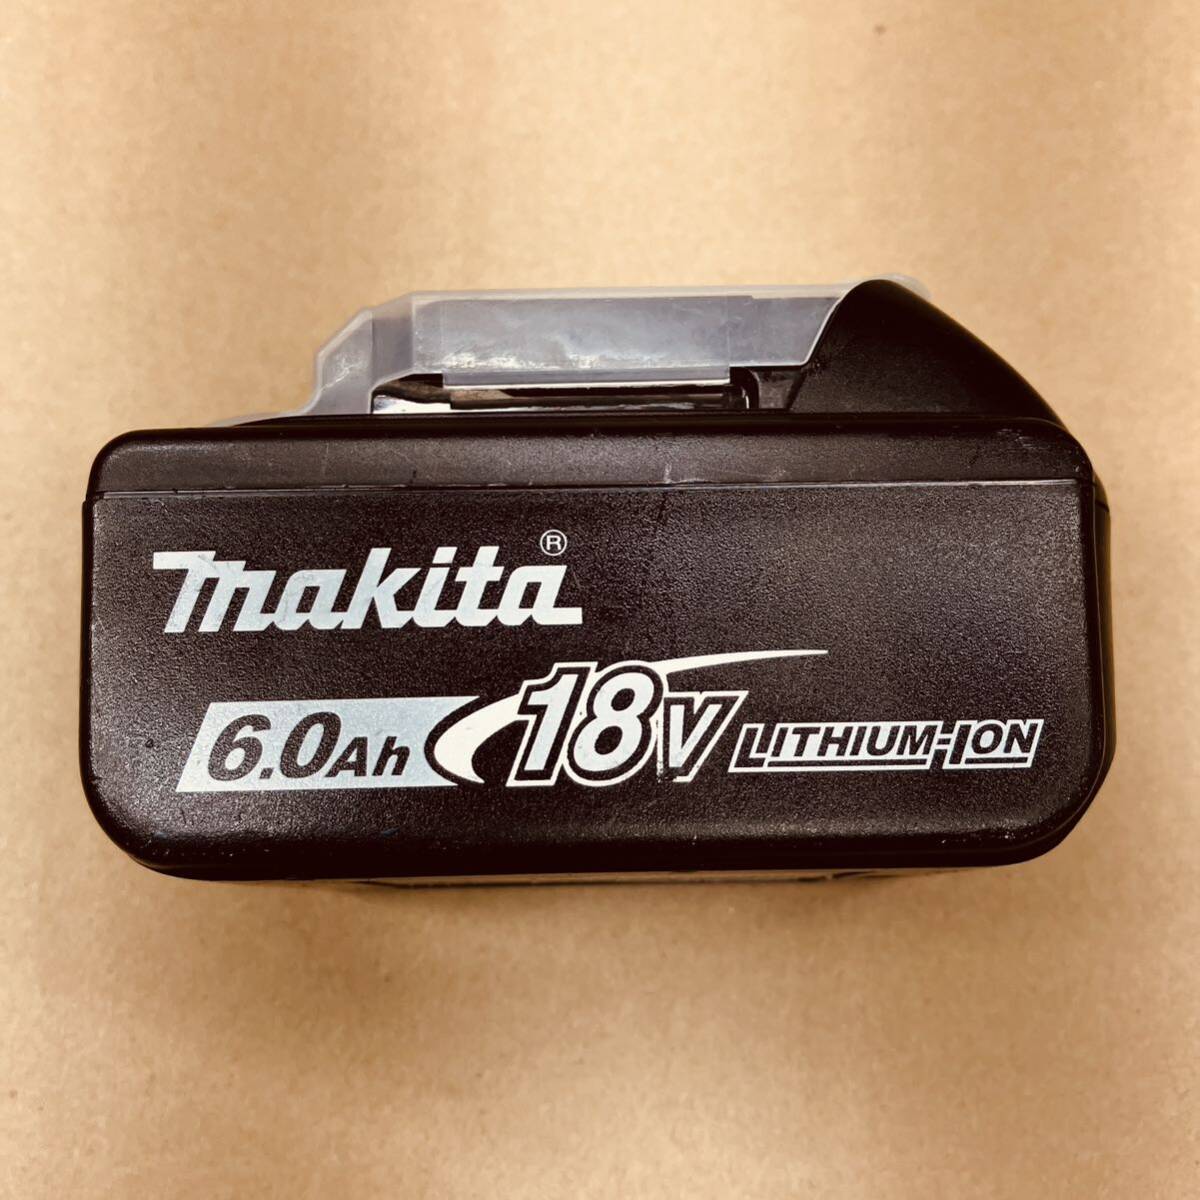 886 中古 純正品 マキタ 充電池 18V 6.0Ah BL1860B リチウムイオン バッテリー makitaの画像1